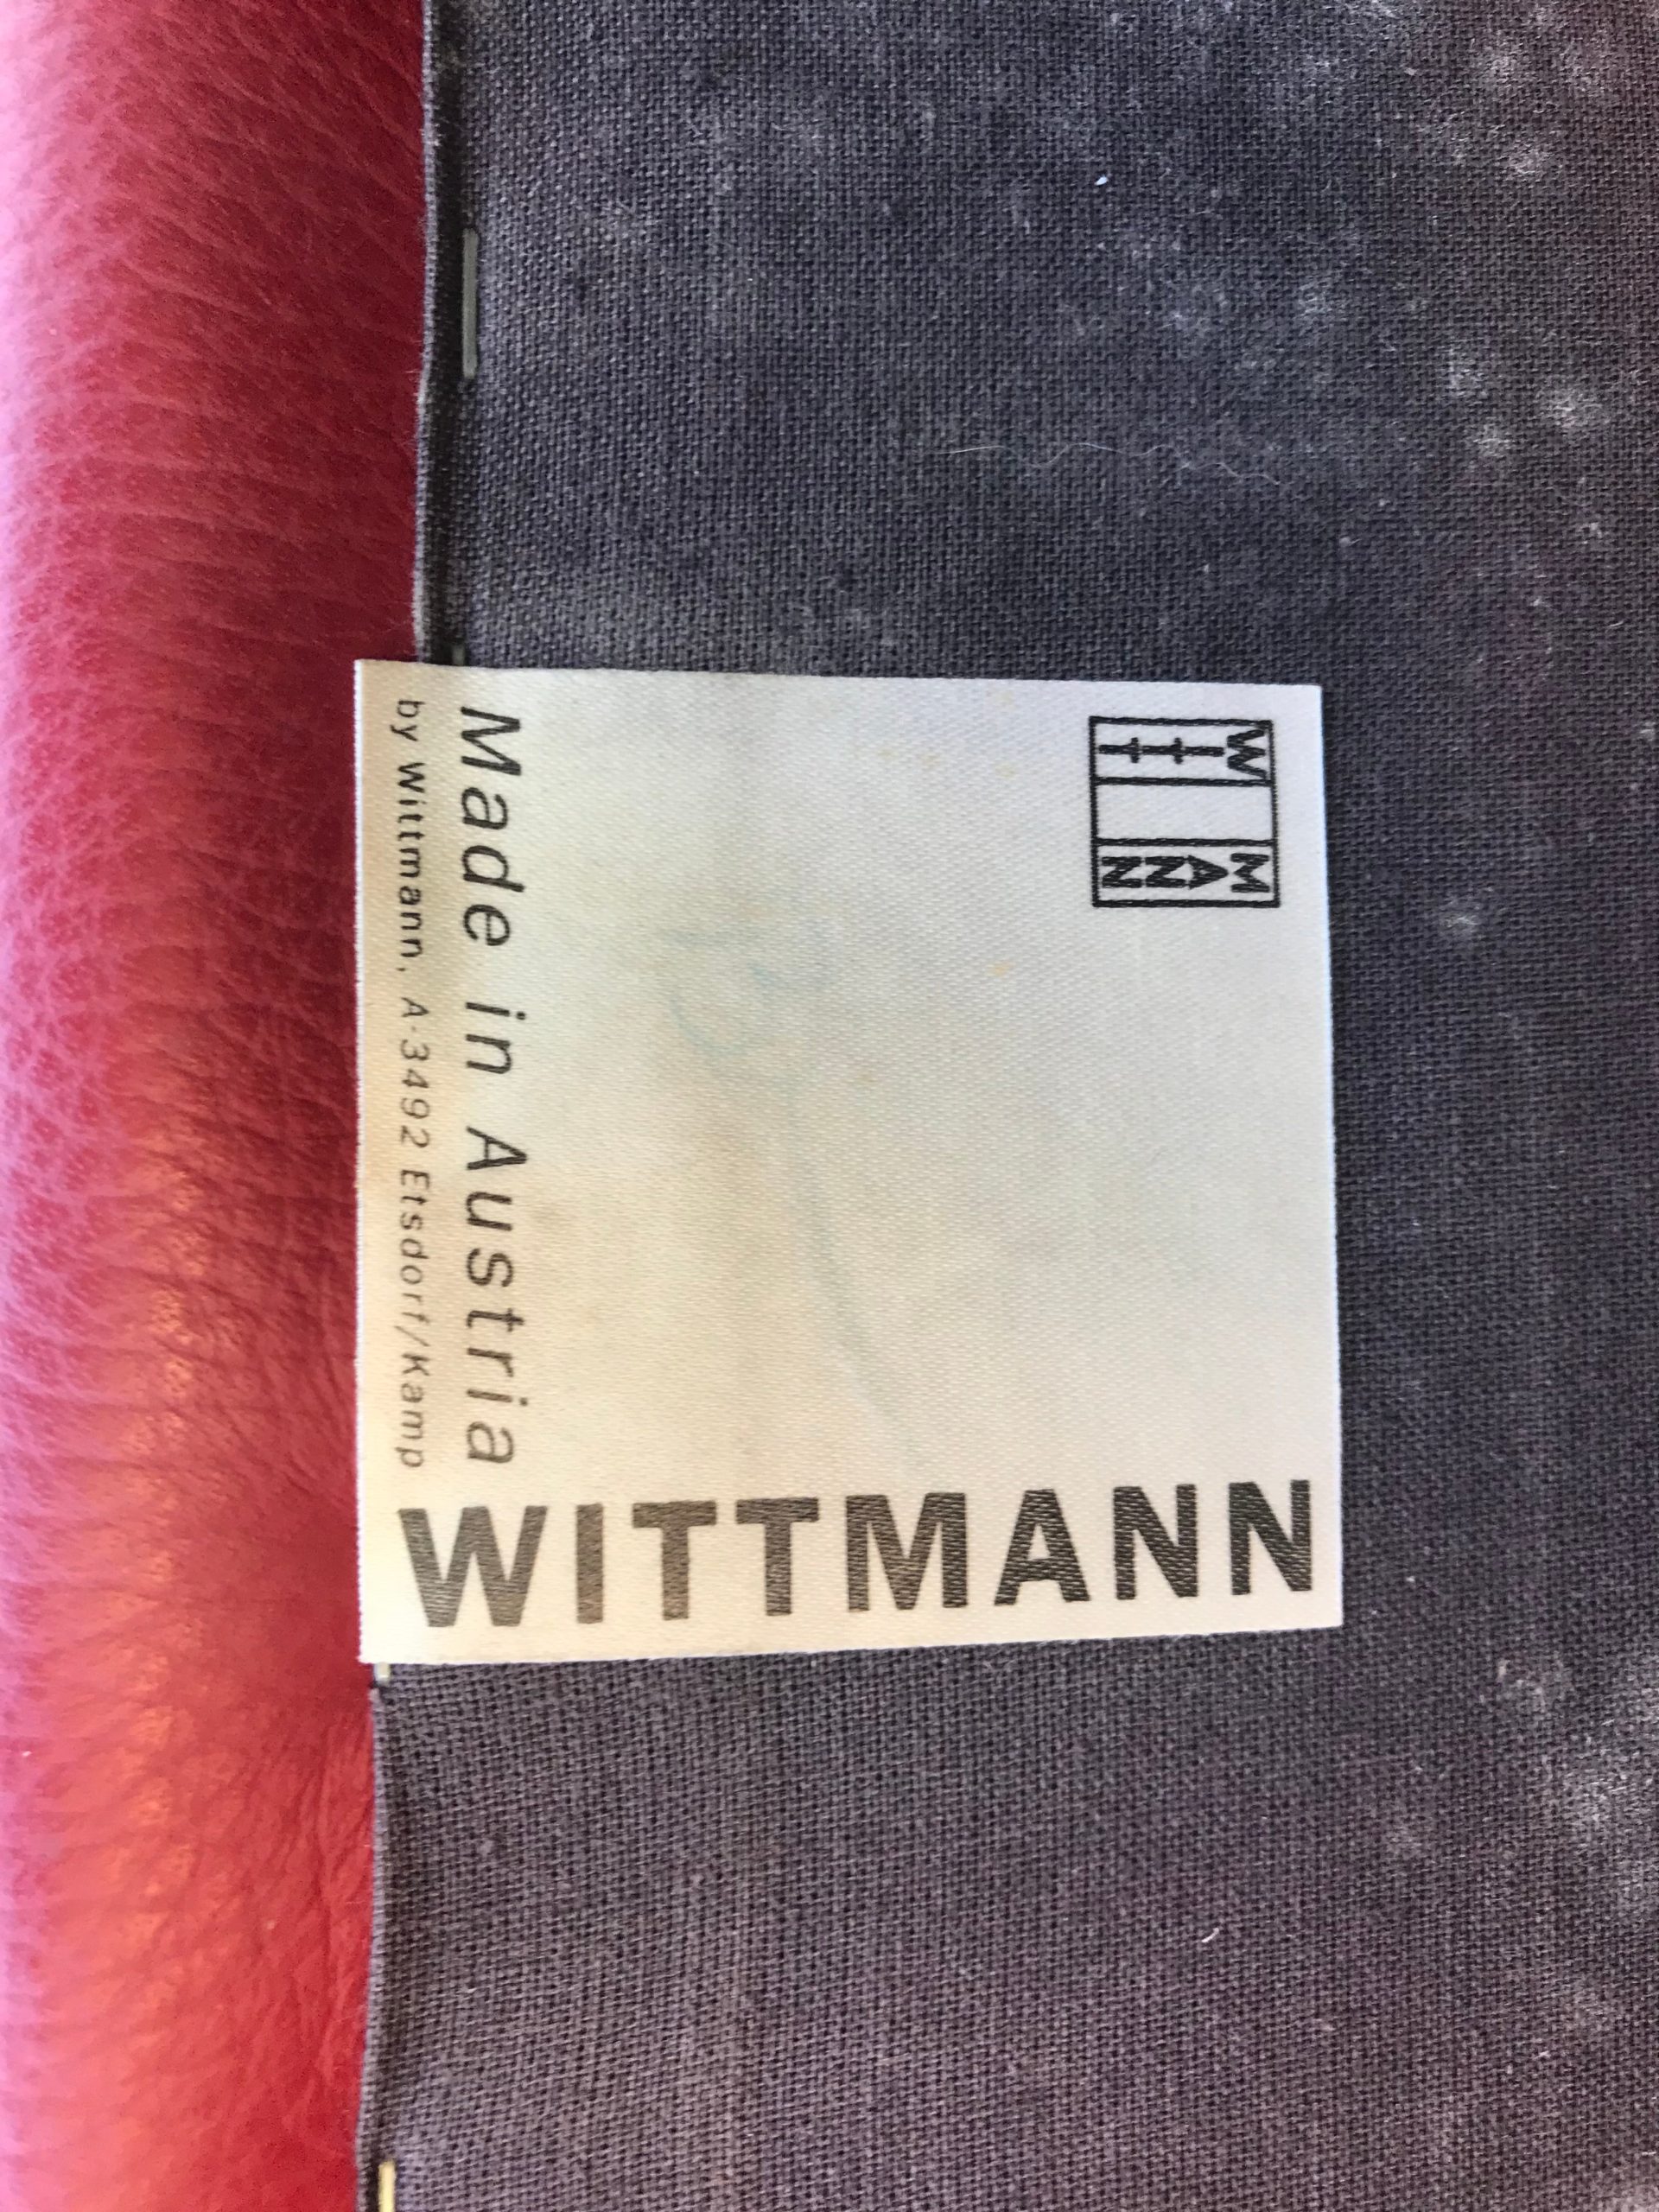 Sillas de Cuero Rojo, de Wittmann, de los Años 80